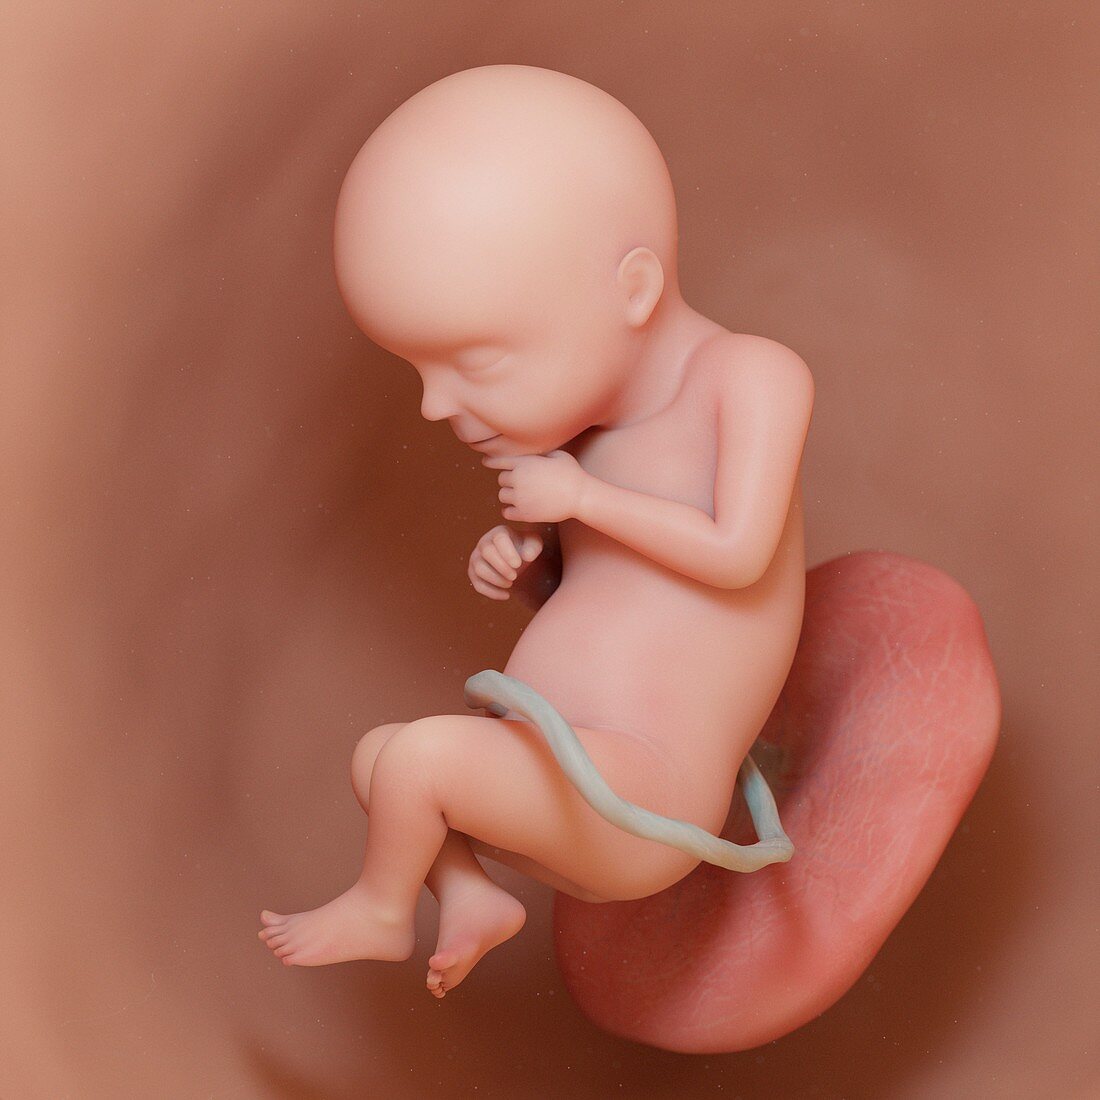 Fetus at week 28, illustration